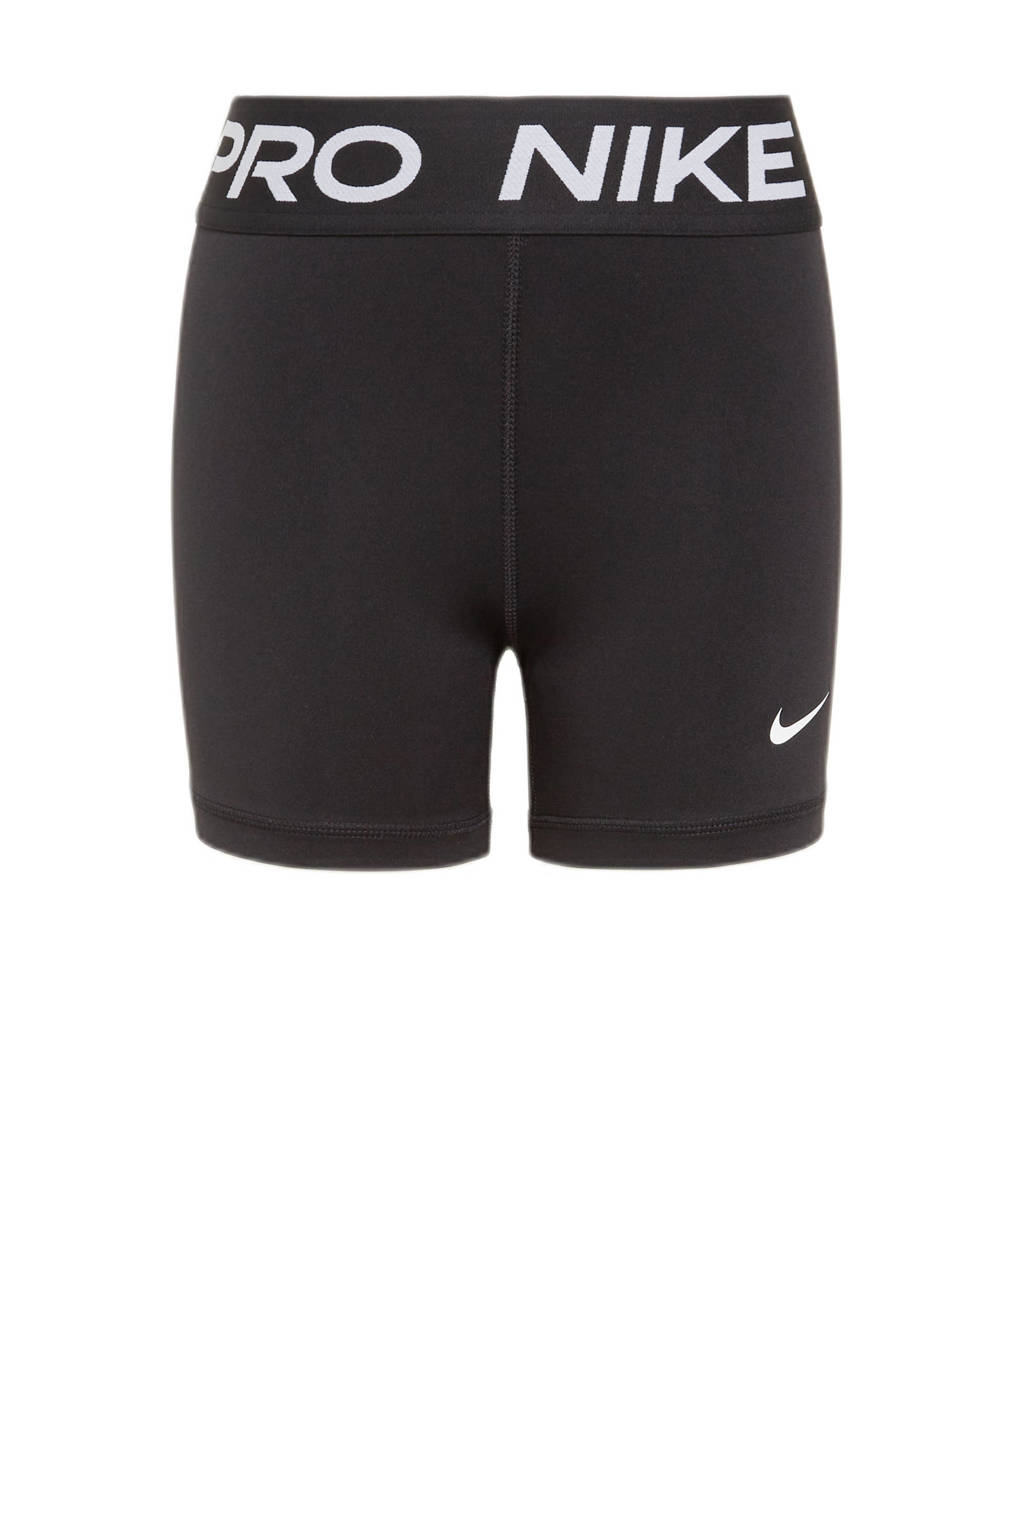 Nike broek met logo zwart/wit, Zwart/wit